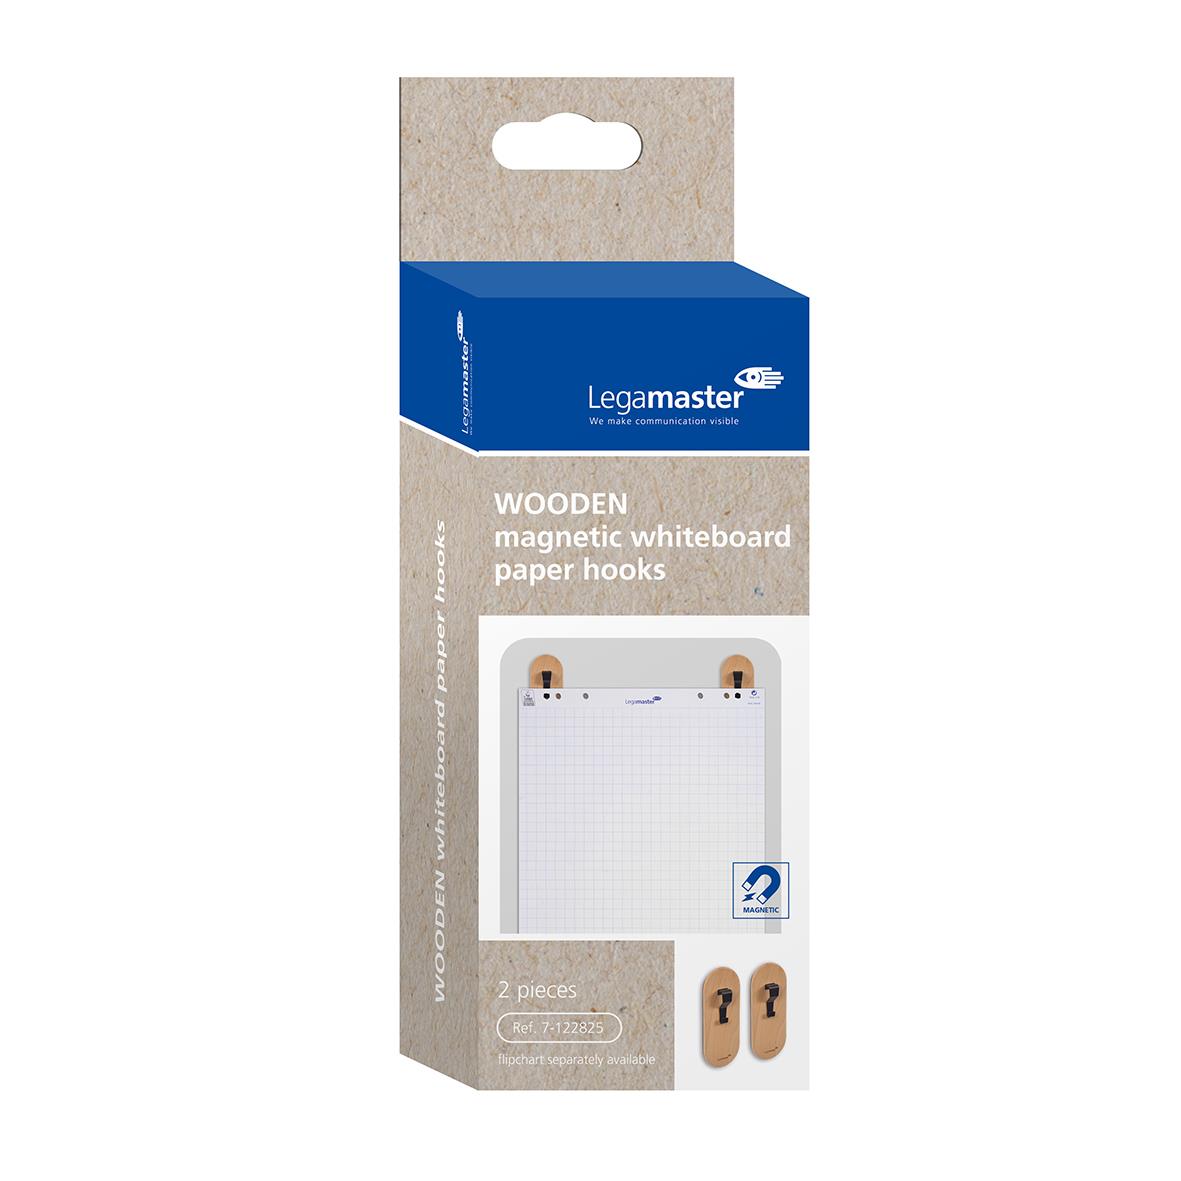 Pappershållare för Whiteboard Legamaster Wooden Magnetisk 75050116_2